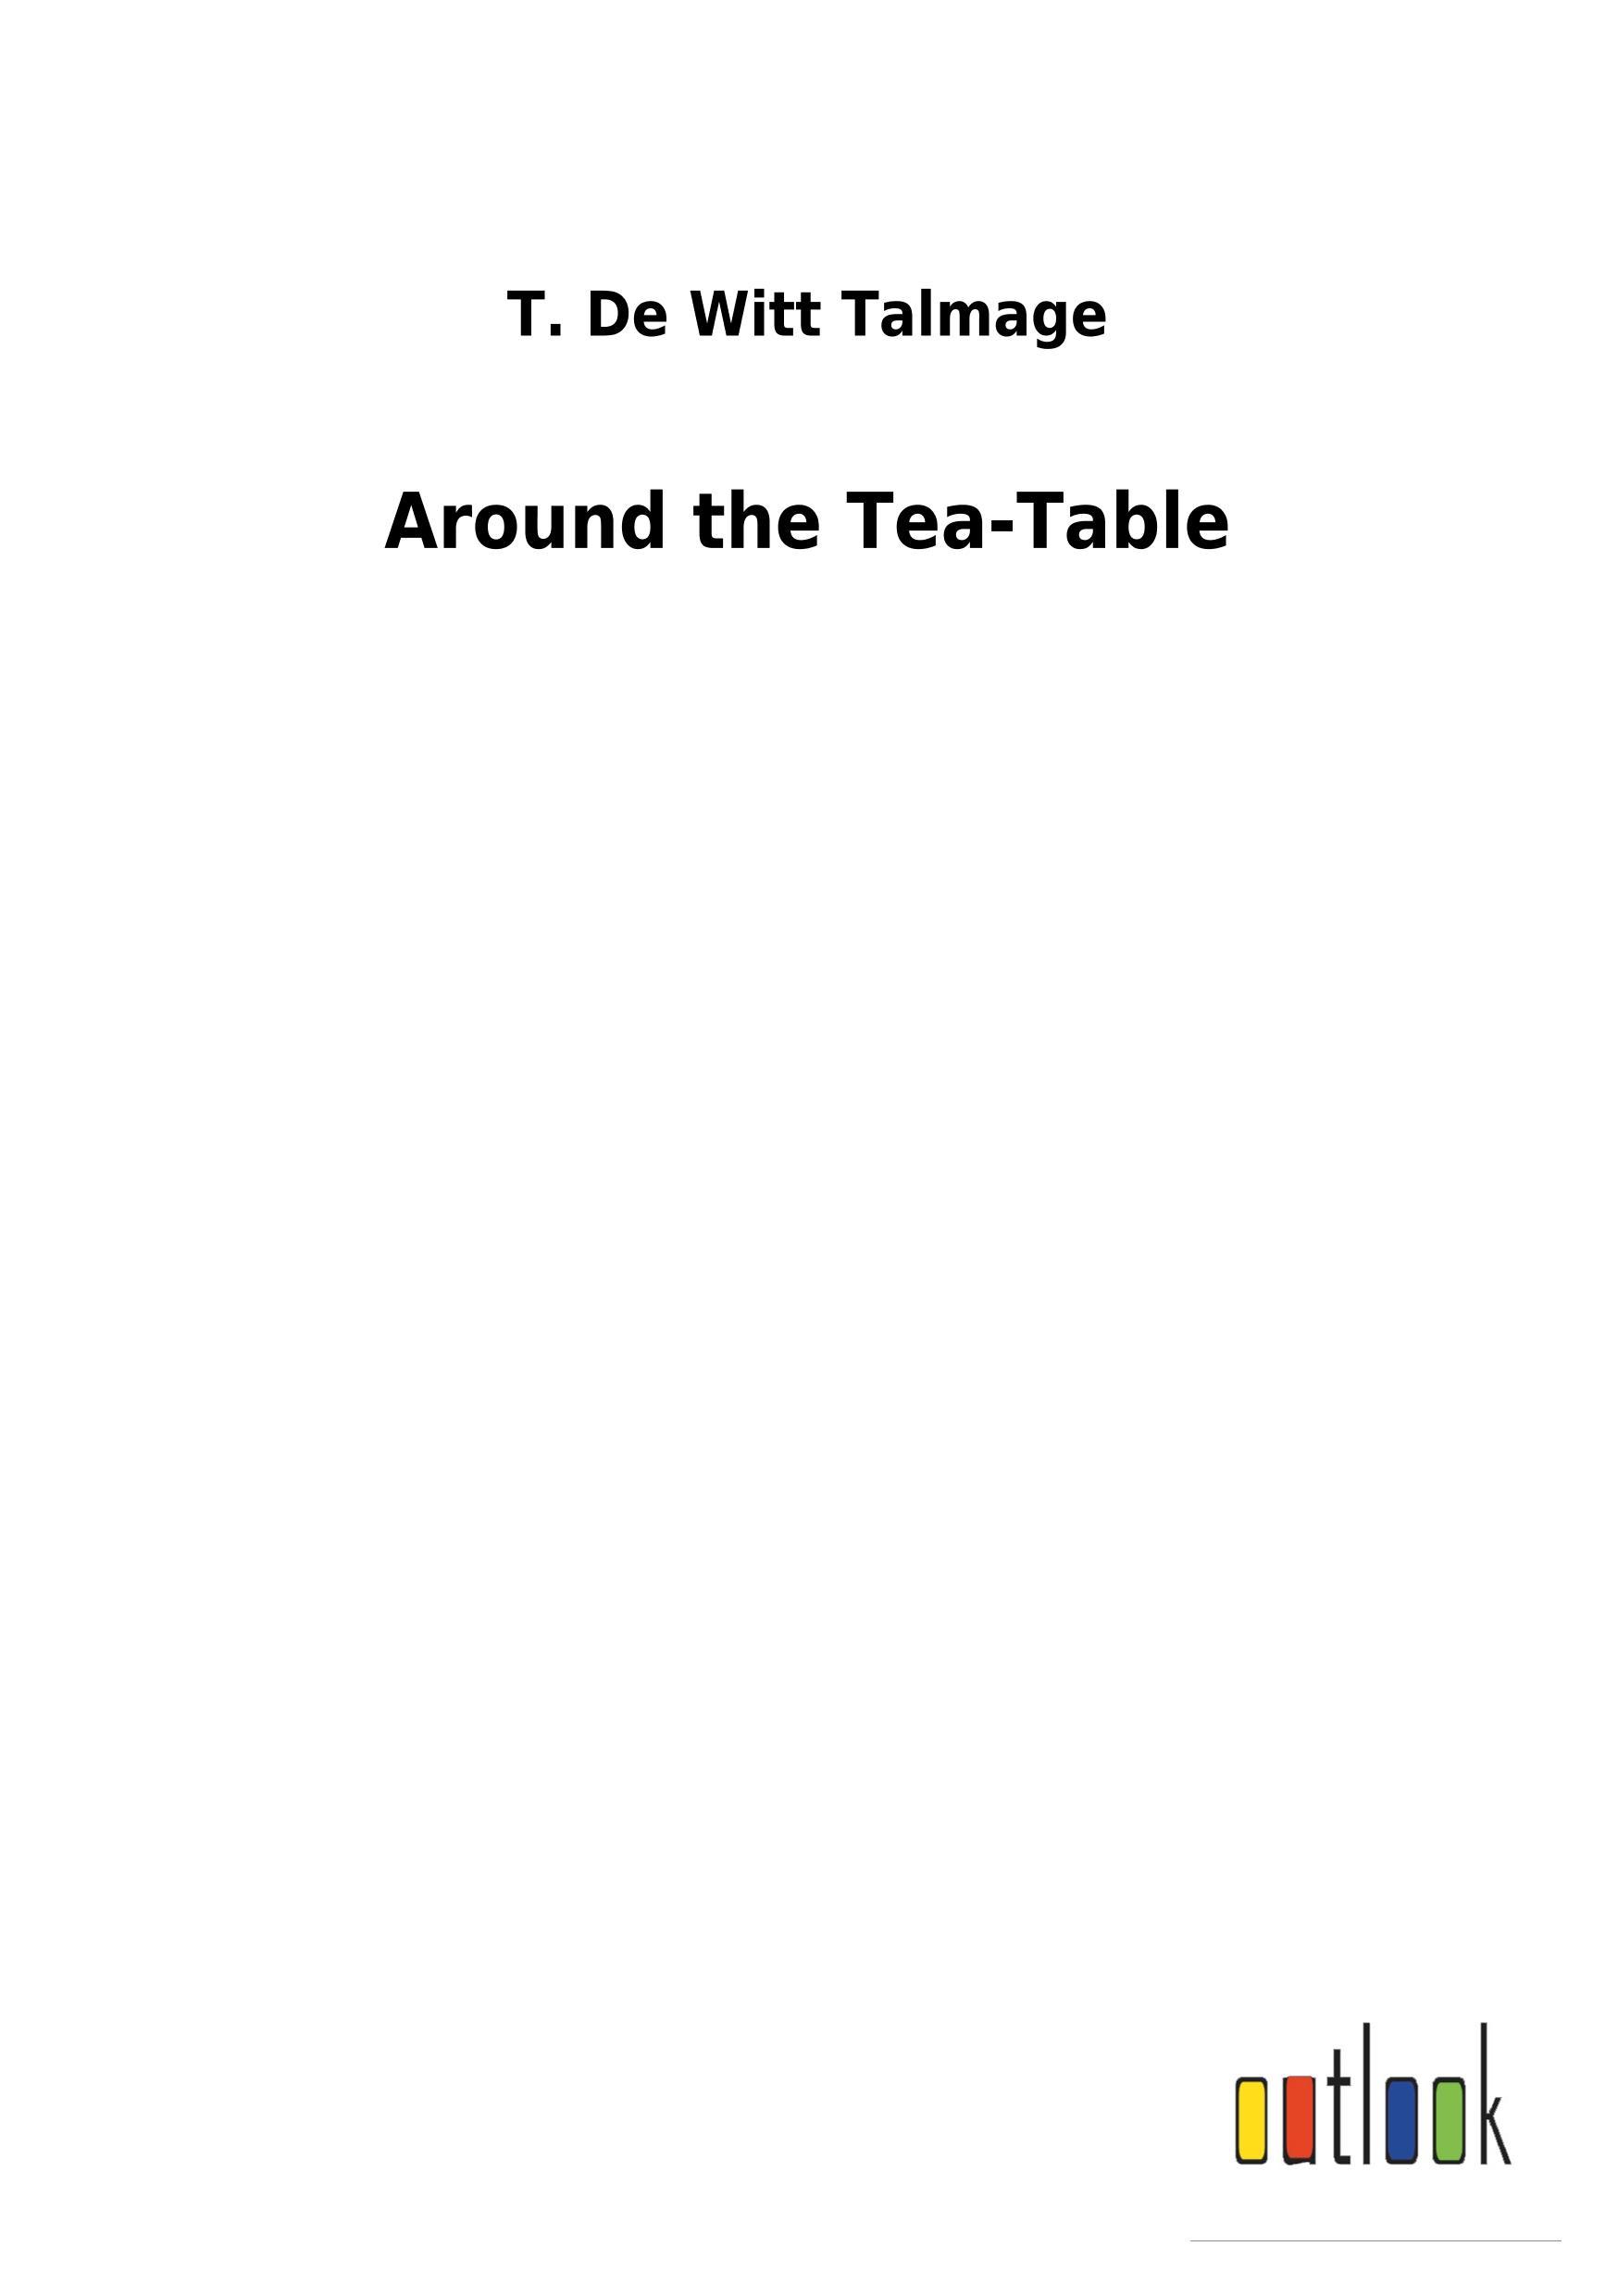 Around the Tea-Table - Talmage, T. De Witt